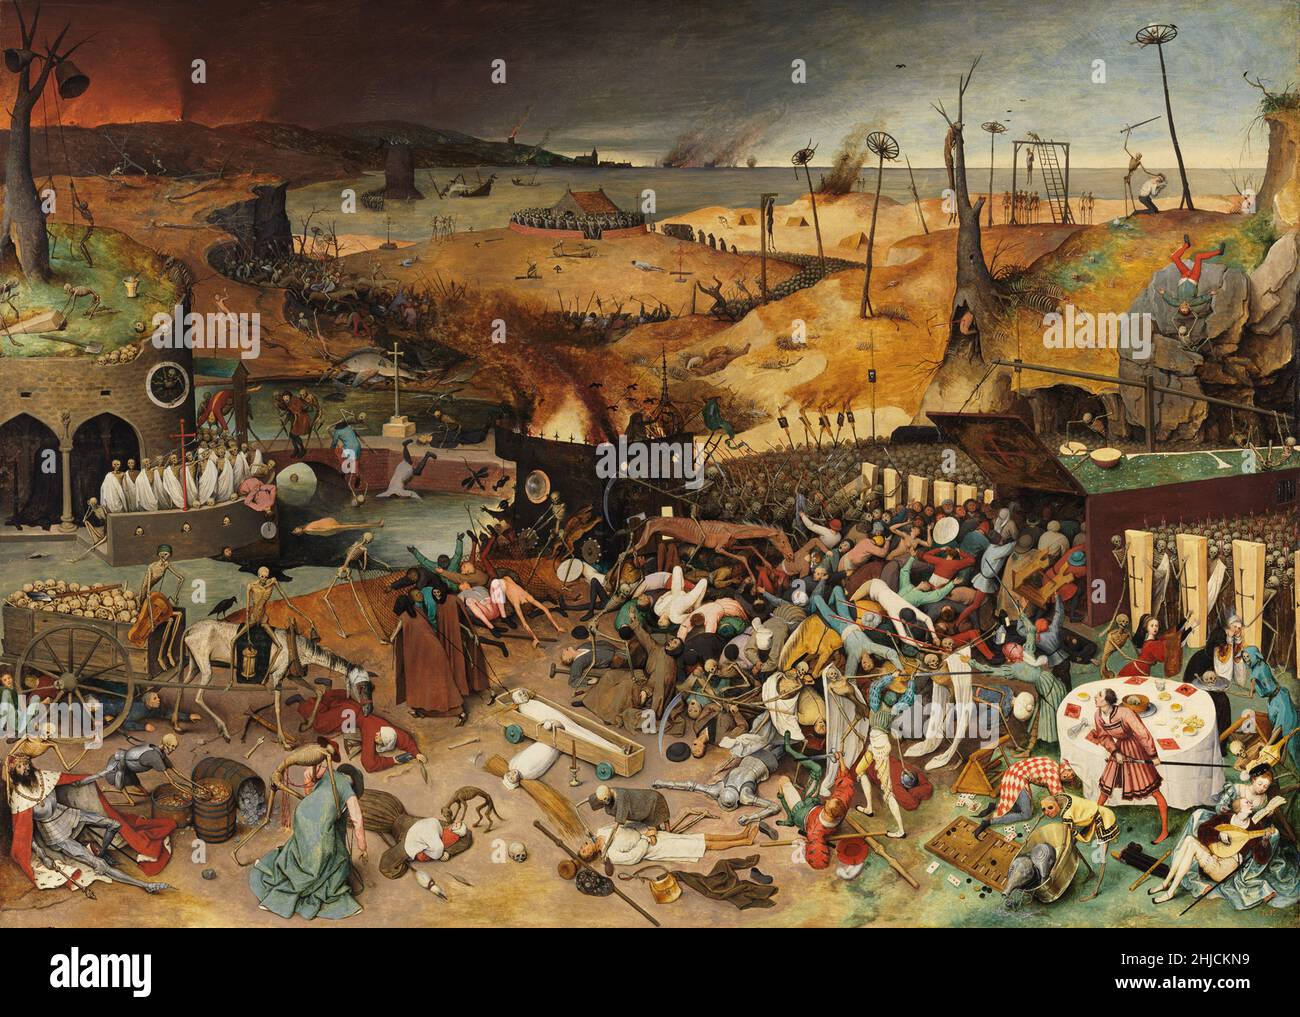 Il Trionfo della morte è un pannello a olio dipinto da Pieter Bruegel il Vecchio intorno al 1562. È presente nel Museo del Prado di Madrid dal 1827. Raffigurante la macellazione totale, cataloga gli effetti della peste, tra gli altri orrori. Foto Stock